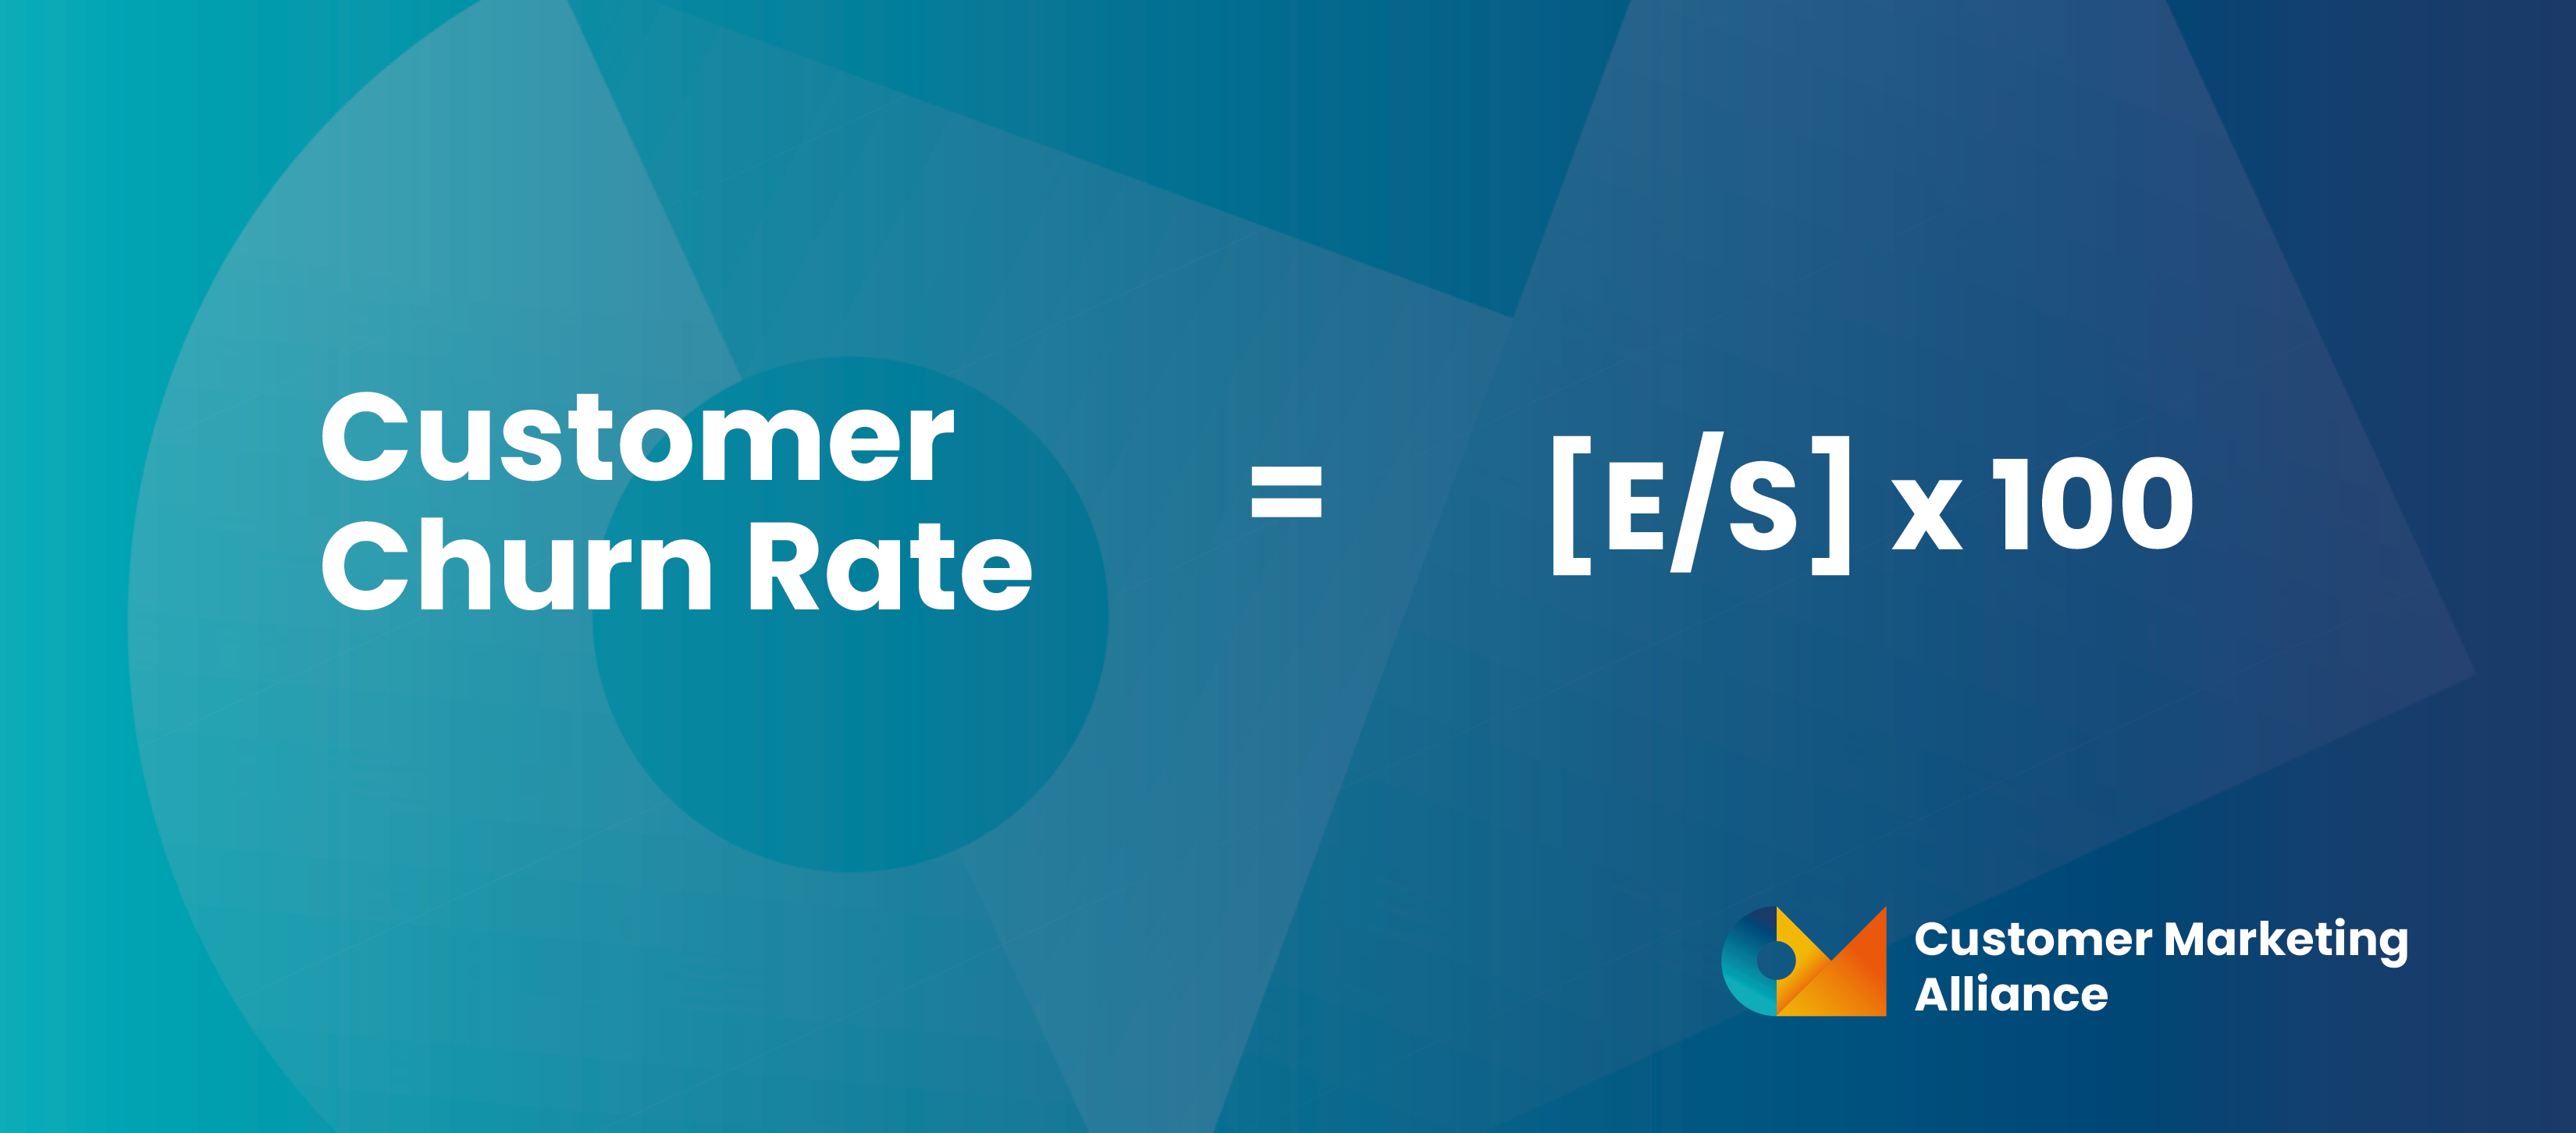 [E/S] x 100 = Customer Churn Rate